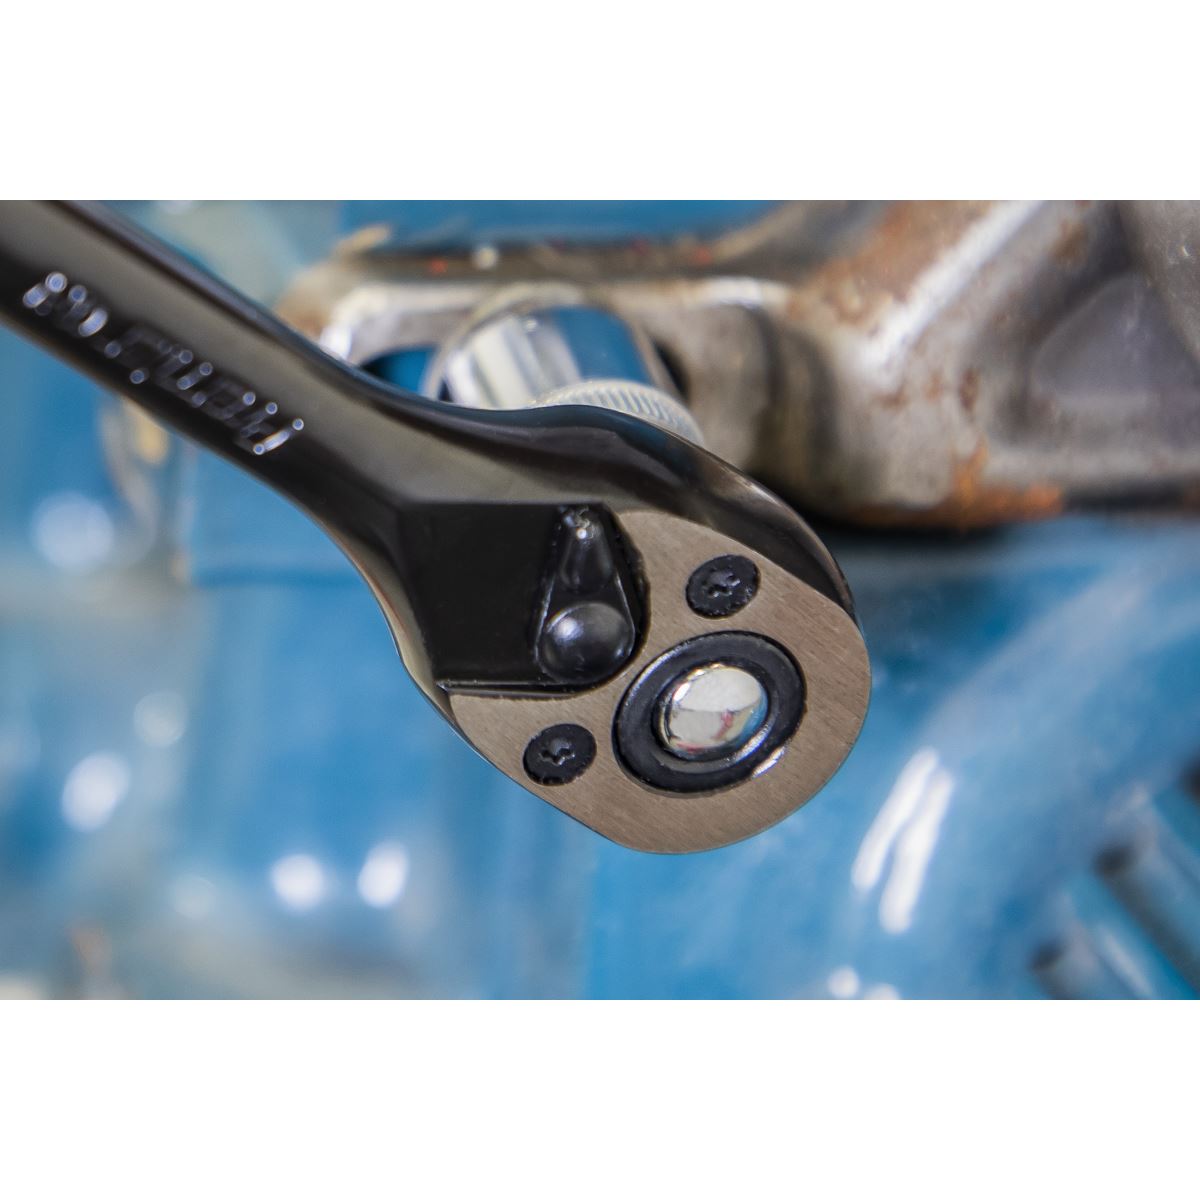 Sealey Ratchet Wrench 1/4"Sq Drive - Premier Black AK7997